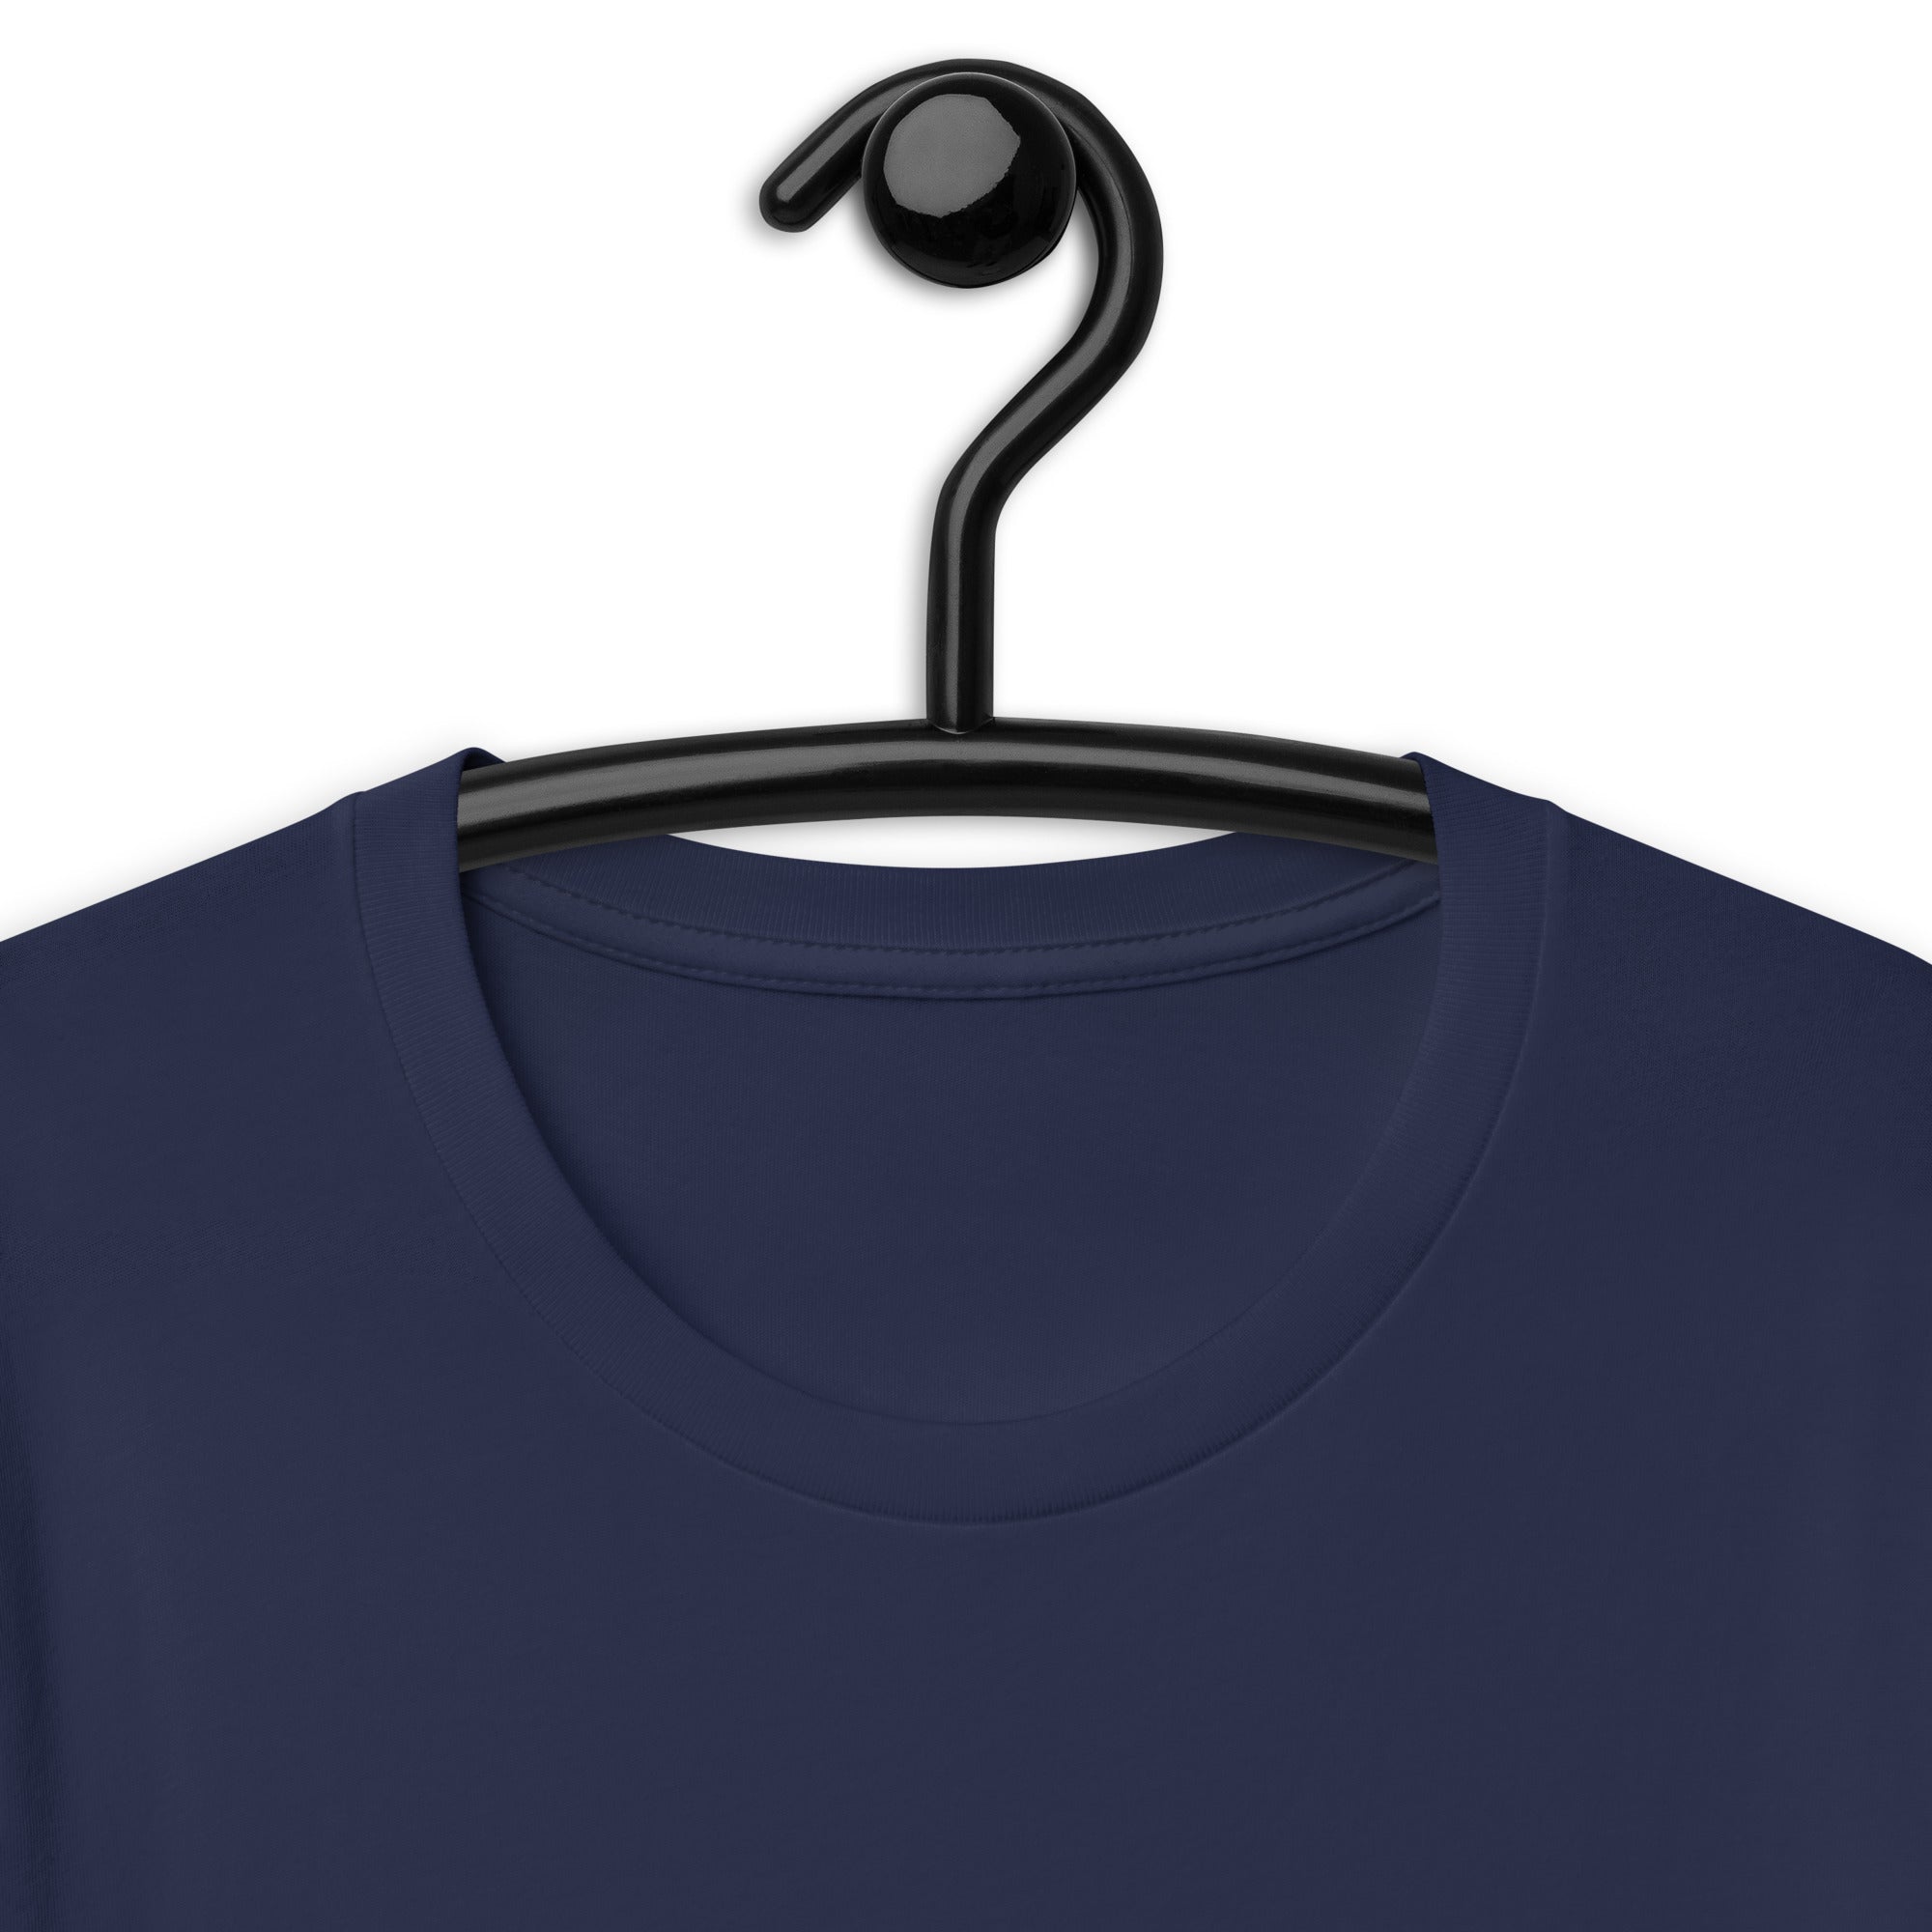 Unisex t-shirt | Yeet